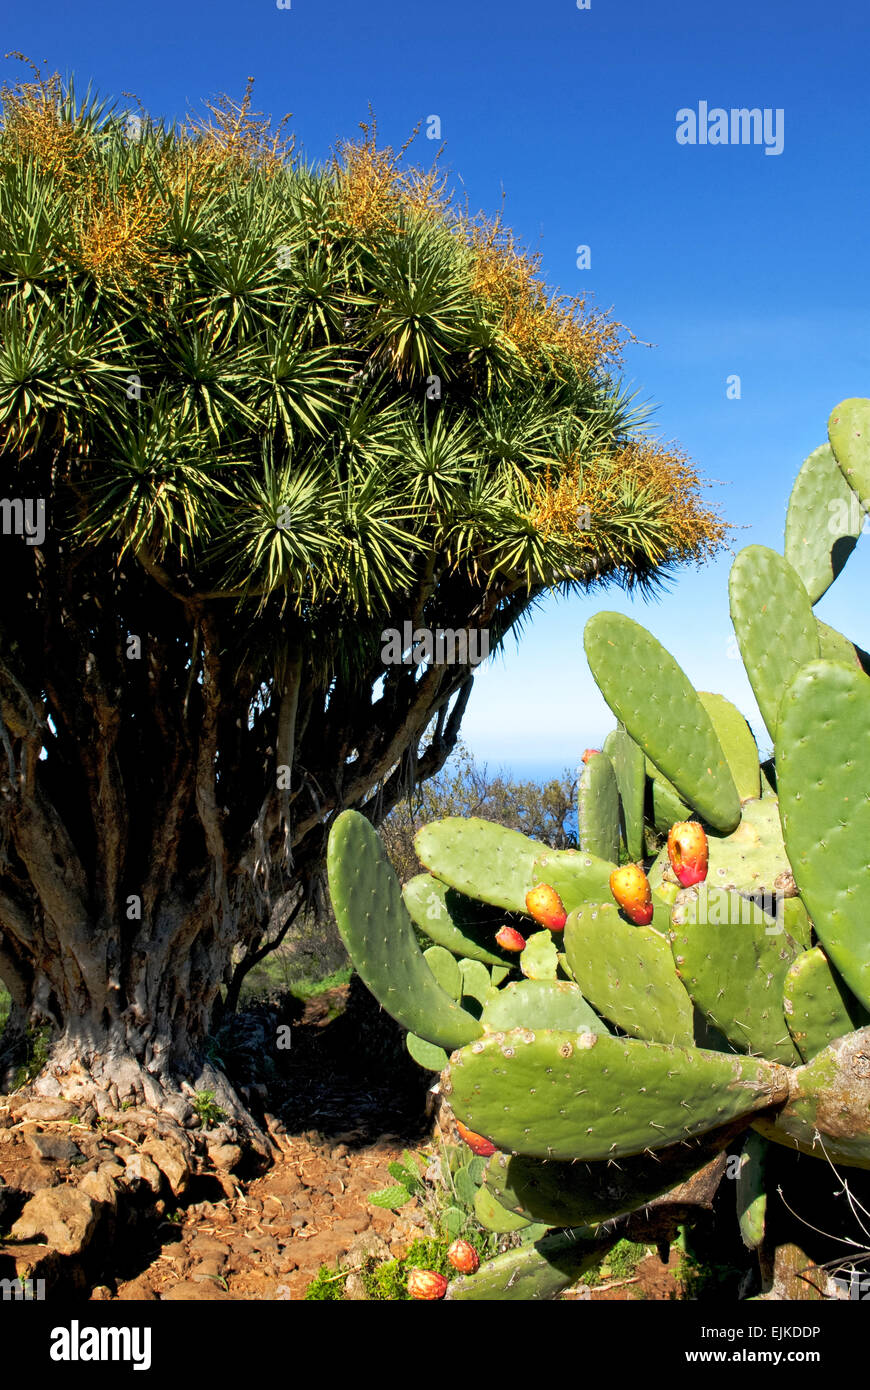 Dragon tree (Dracaena) and cacti, La Palma, Canary Islands, Spain, Europe Stock Photo